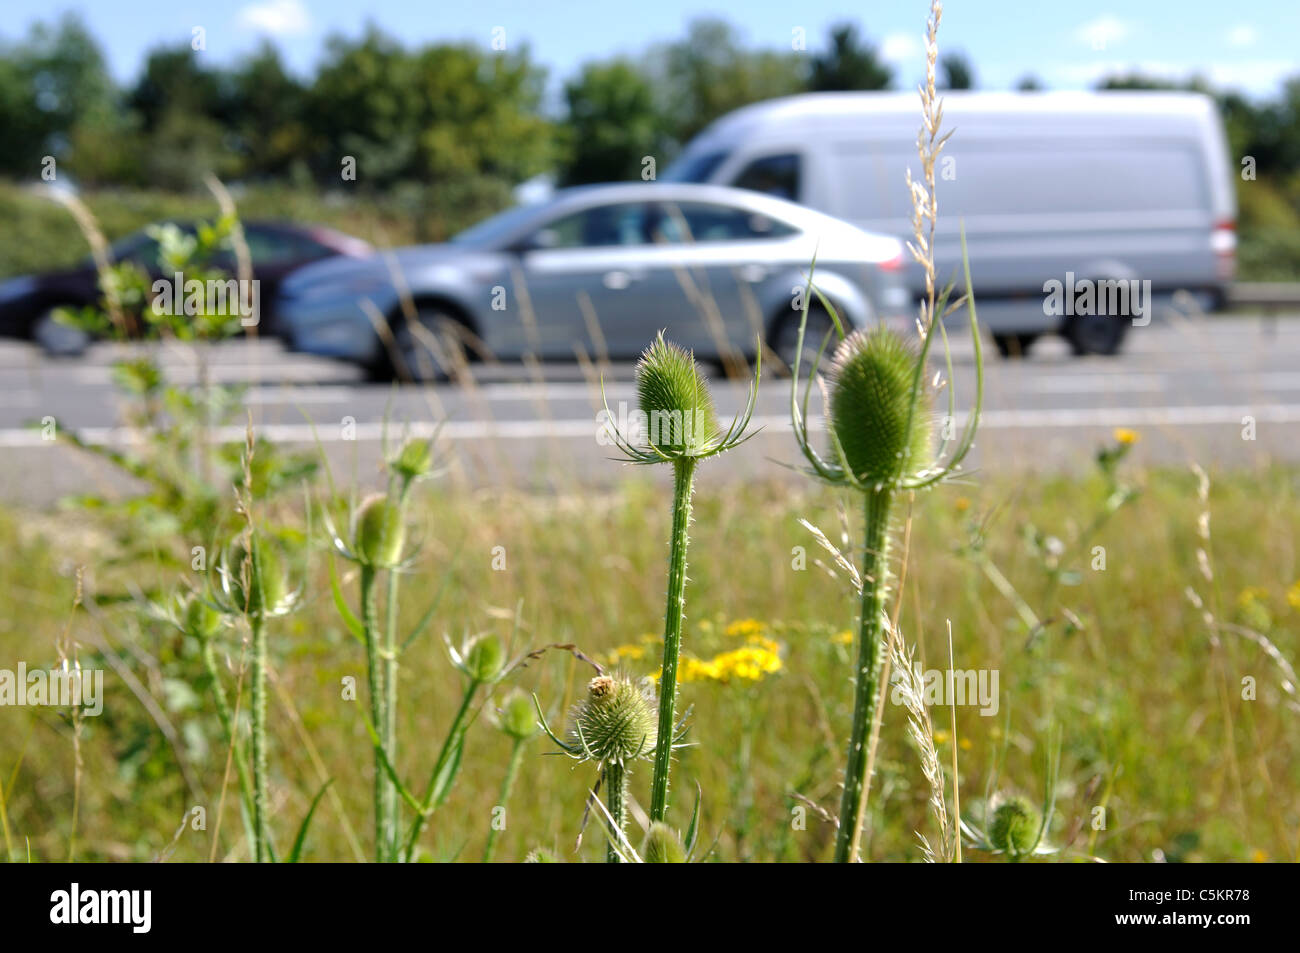 M40 motorway verge with vehicles passing, Warwickshire, UK Stock Photo